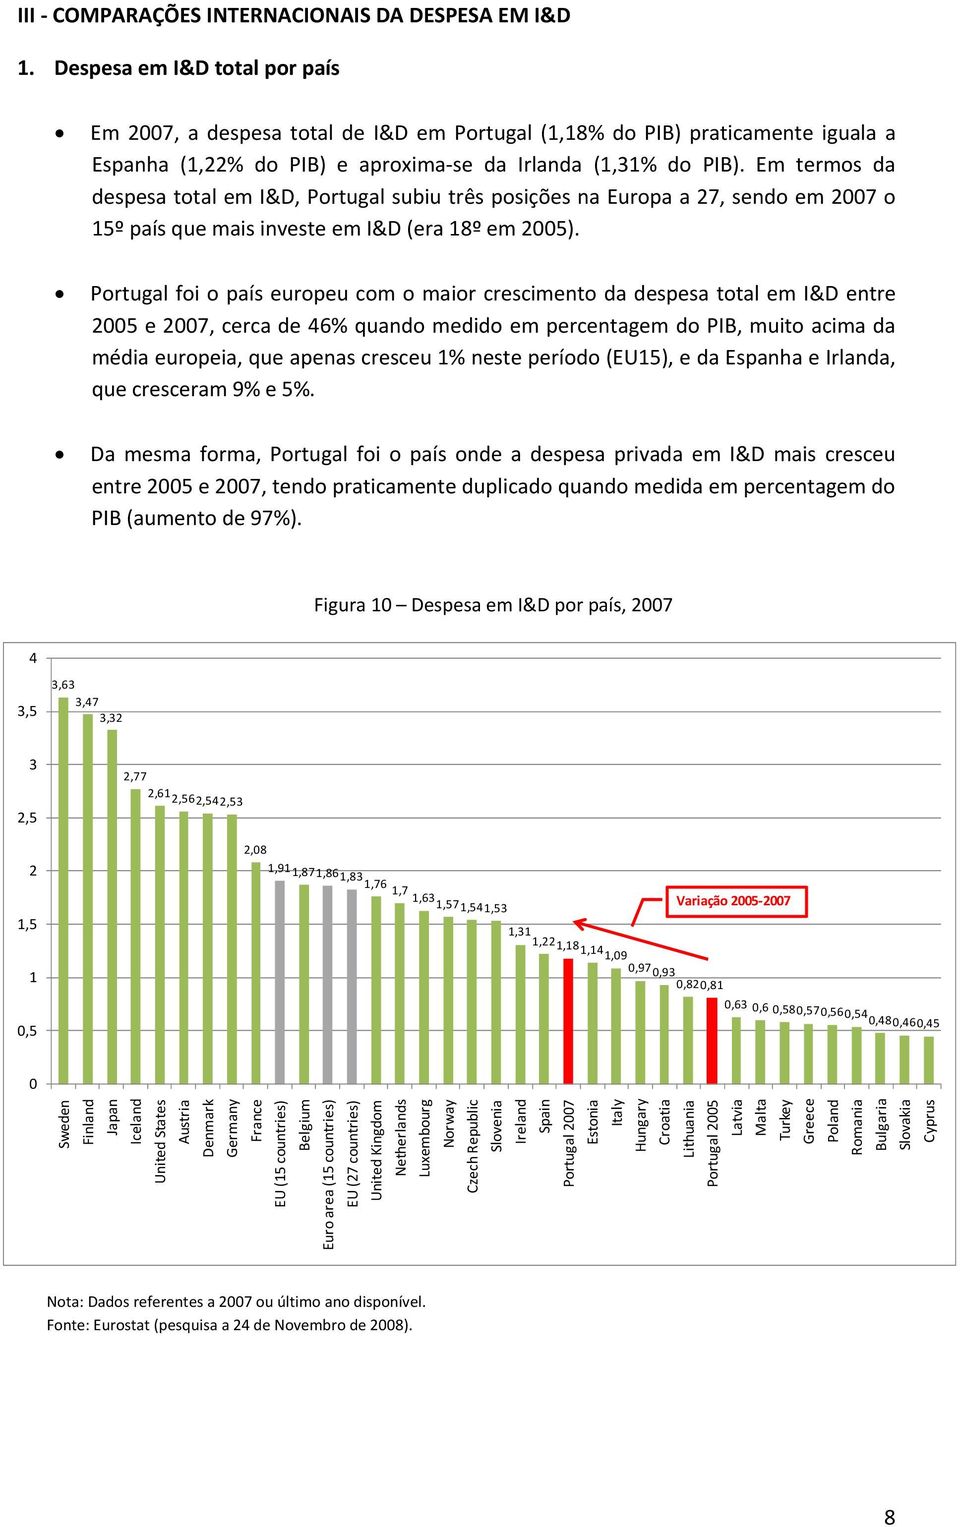 Em termos da despesa total em I&D, Portugal subiu três posições na Europa a 27, sendo em 2007 o 15º país que mais investe em I&D (era 18º em 2005).